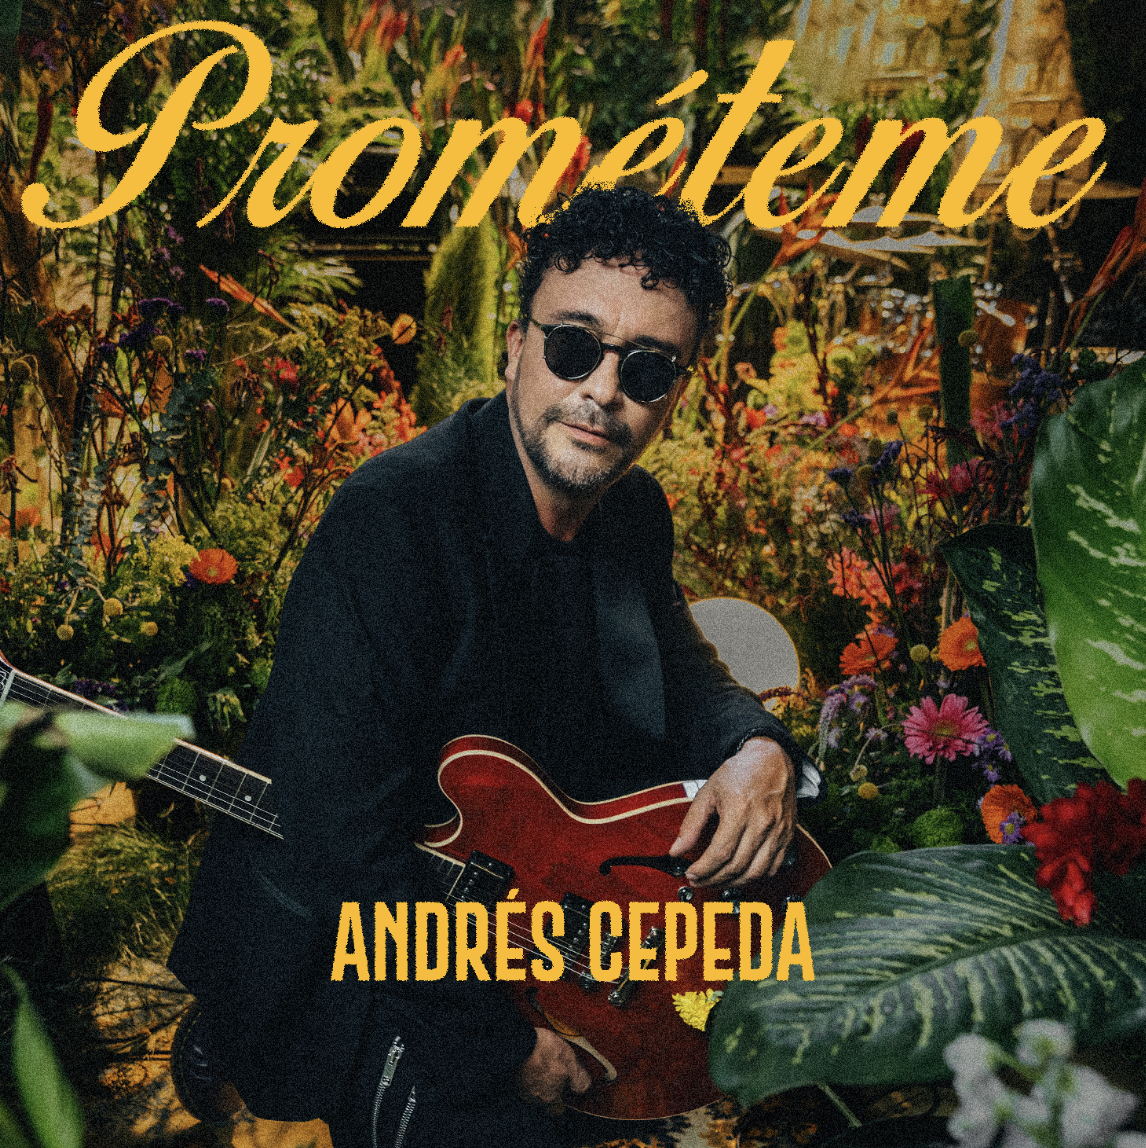 ANDRES CEPEDA lanza nuevo tema “Prométeme”